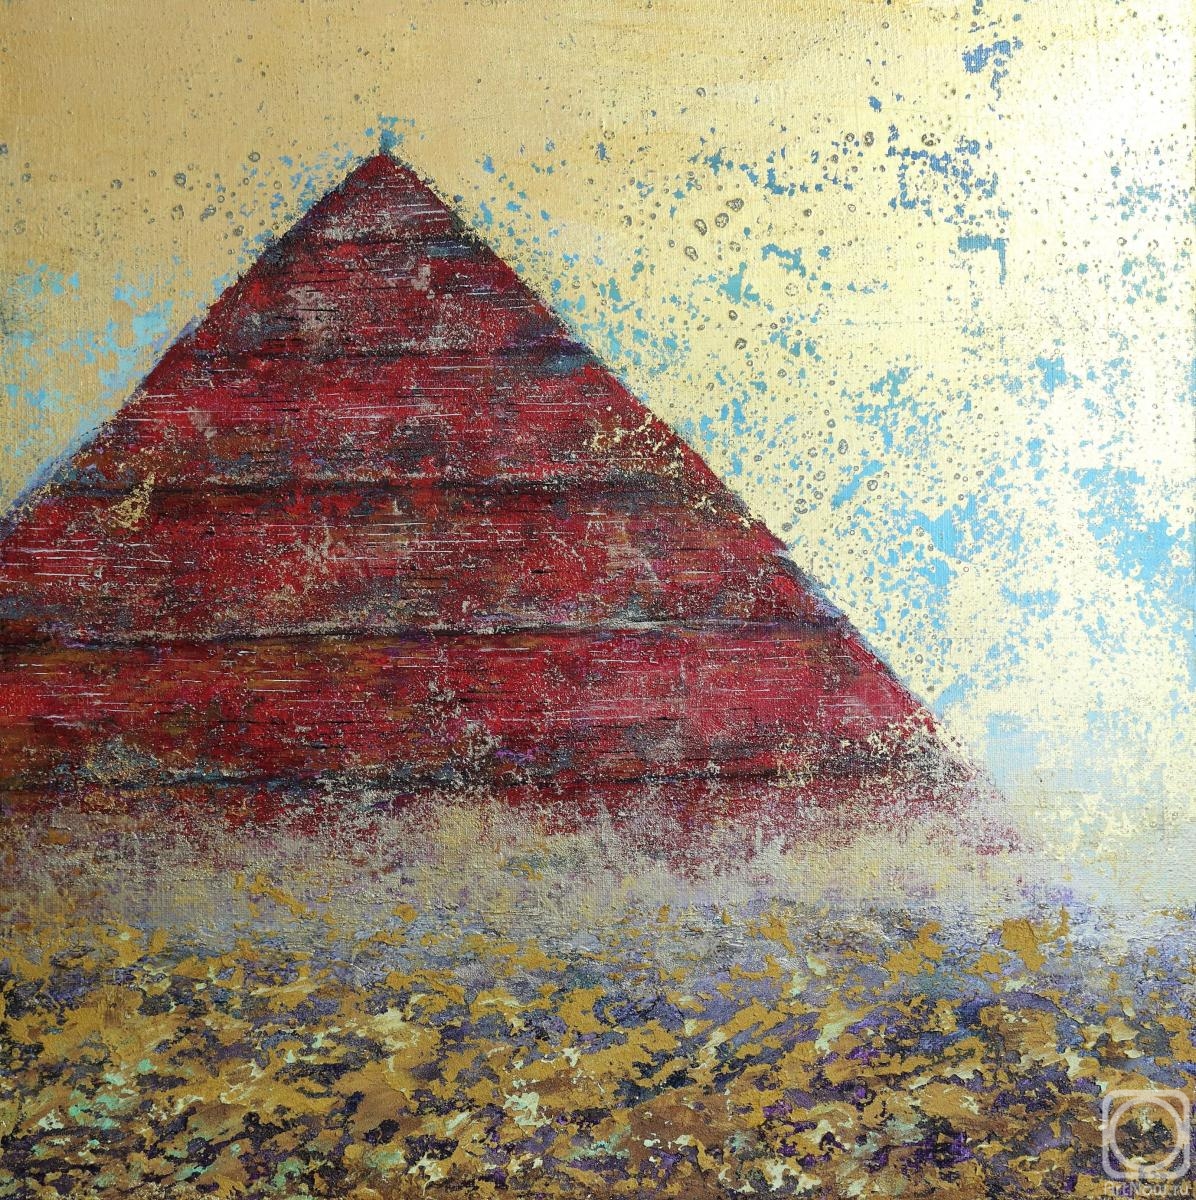 Chepkasova Tatiana. The Desert series. Pyramid